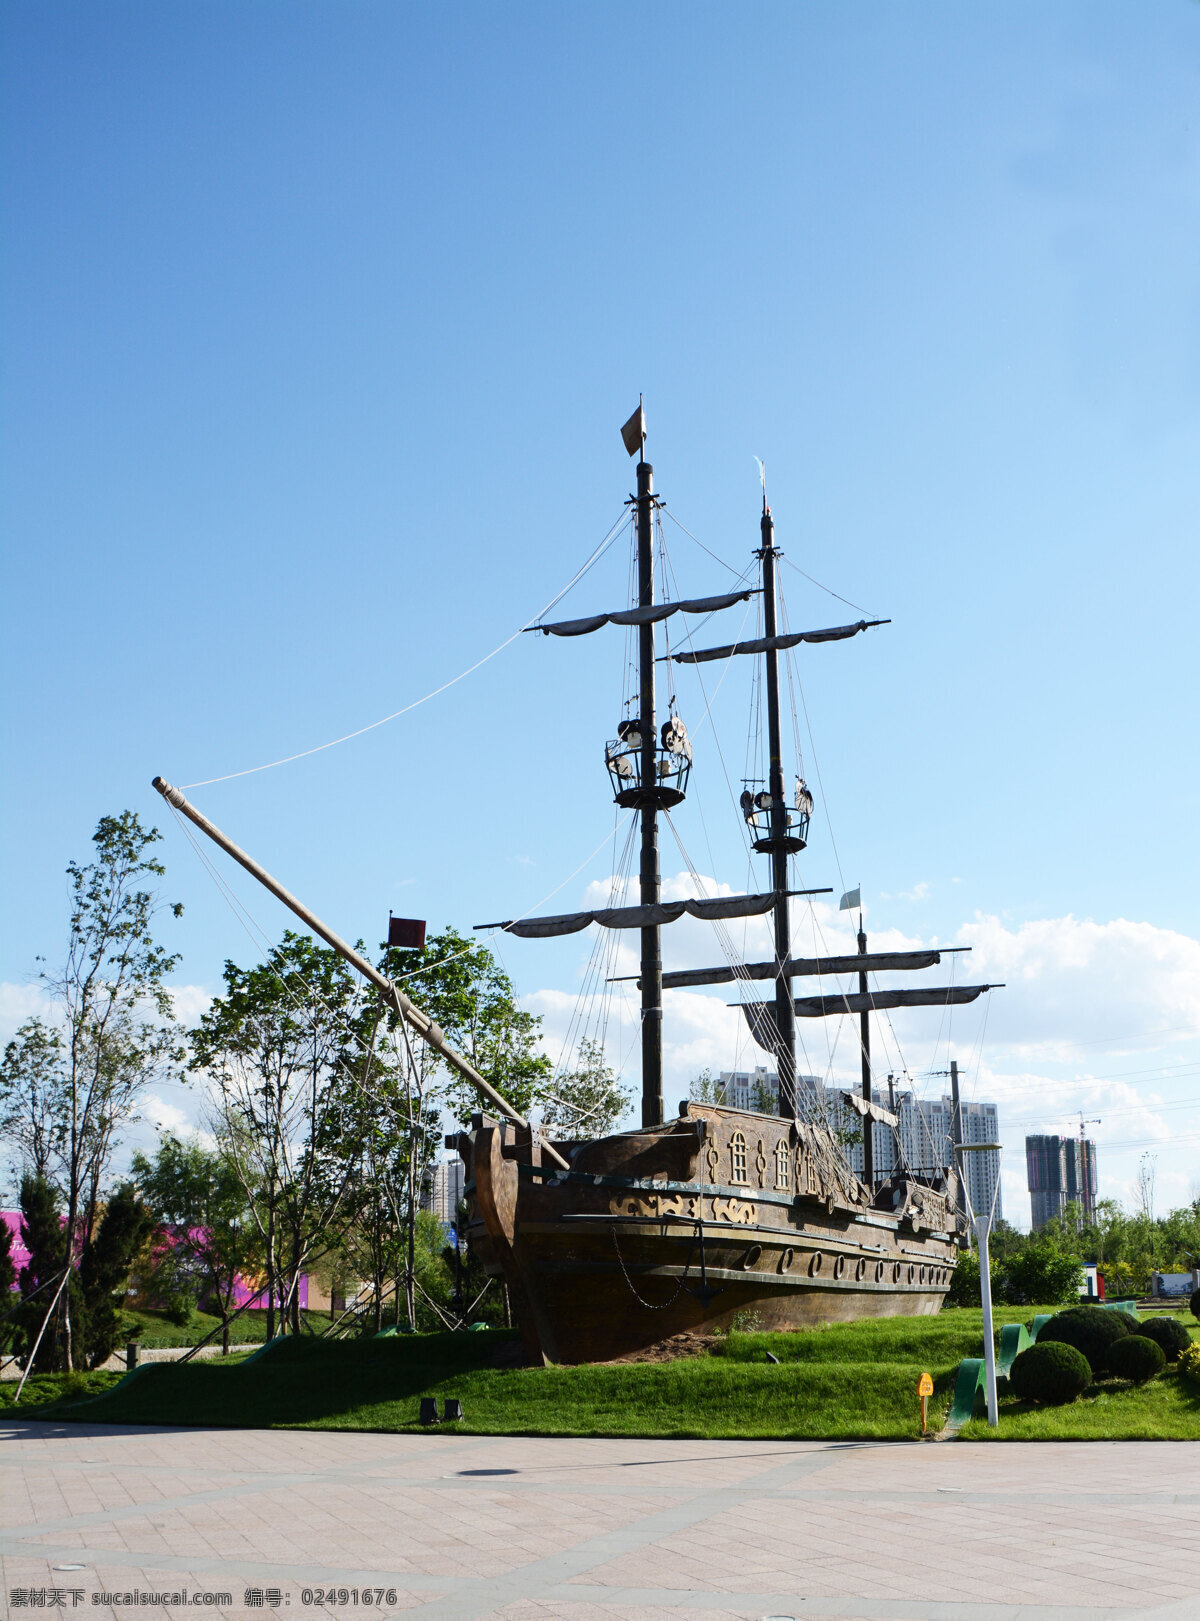 帆船落地 群力新区 古战船 帆船 草坪 桅杆 船体 绿树 蓝天 可爱哈尔滨 文化艺术